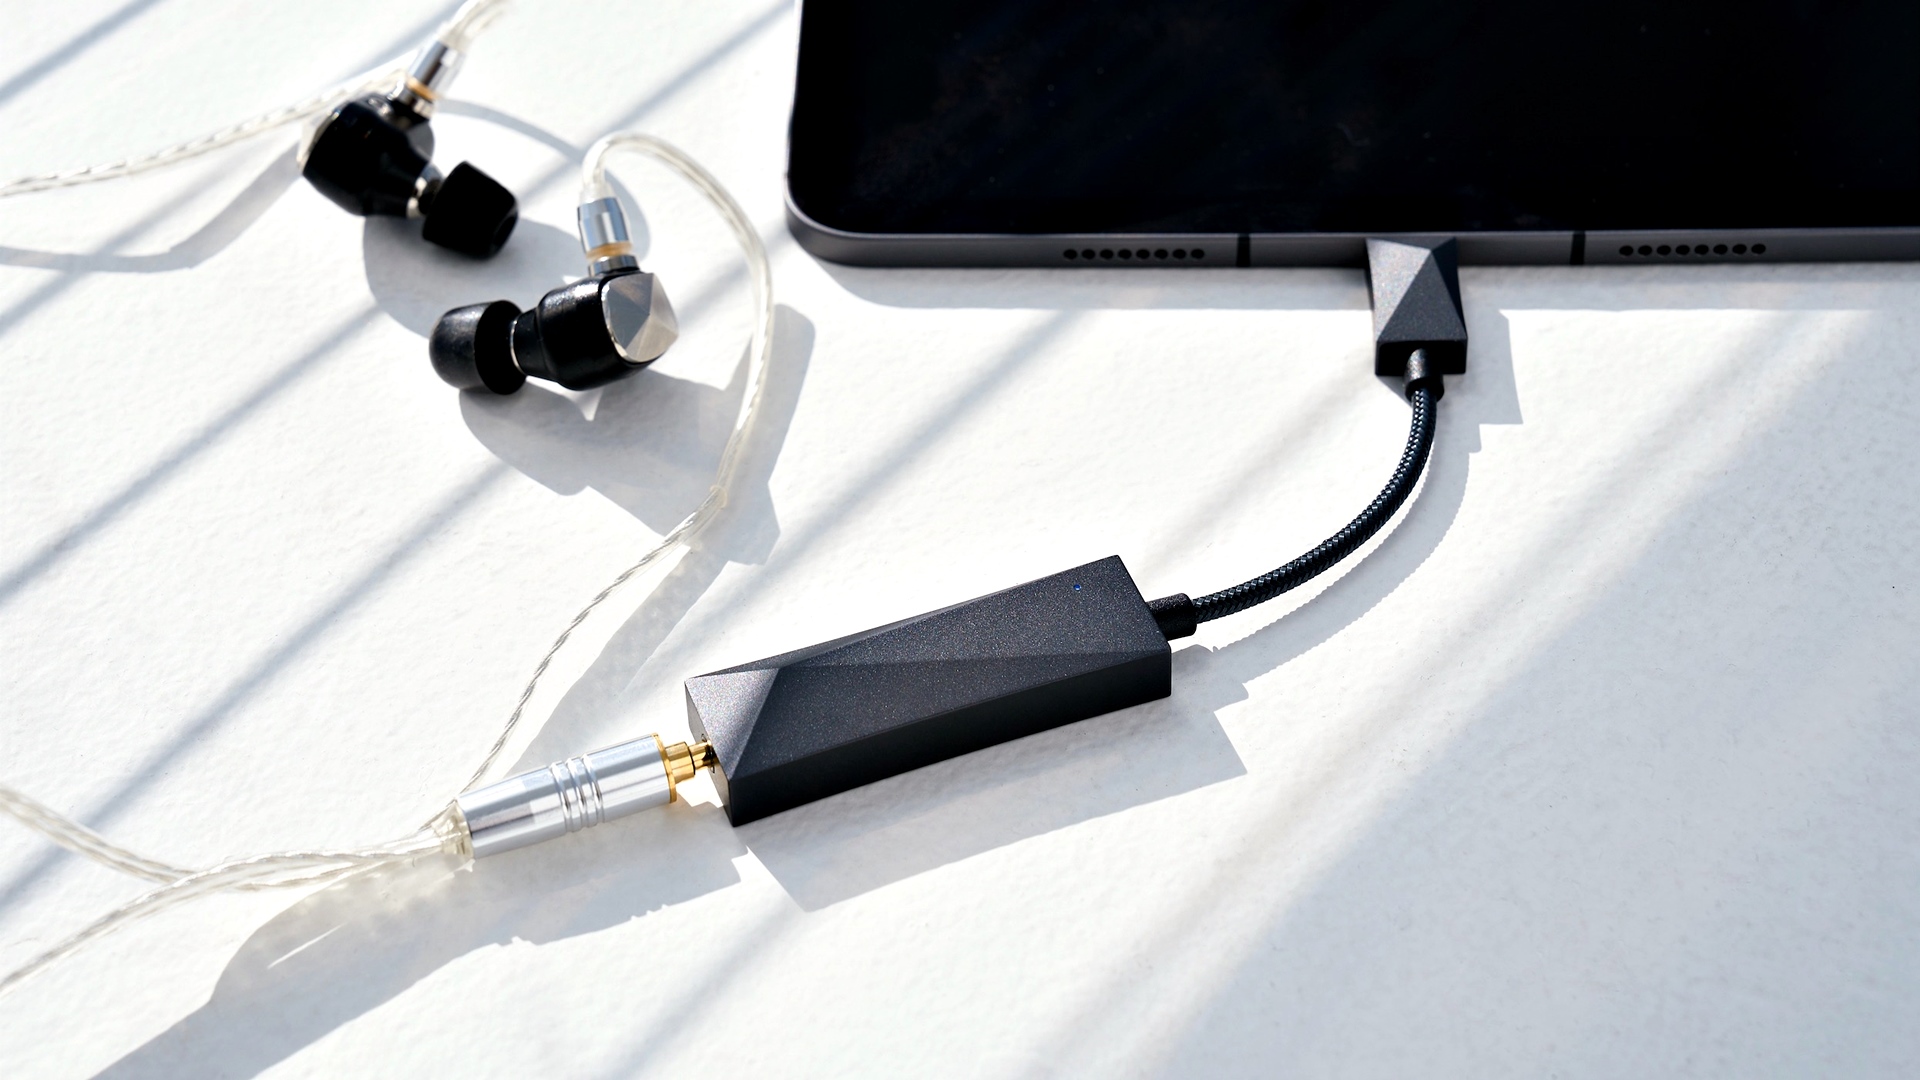 Astell & Kern giới thiệu USB DAC HC3: tích hợp microphone, giá $190